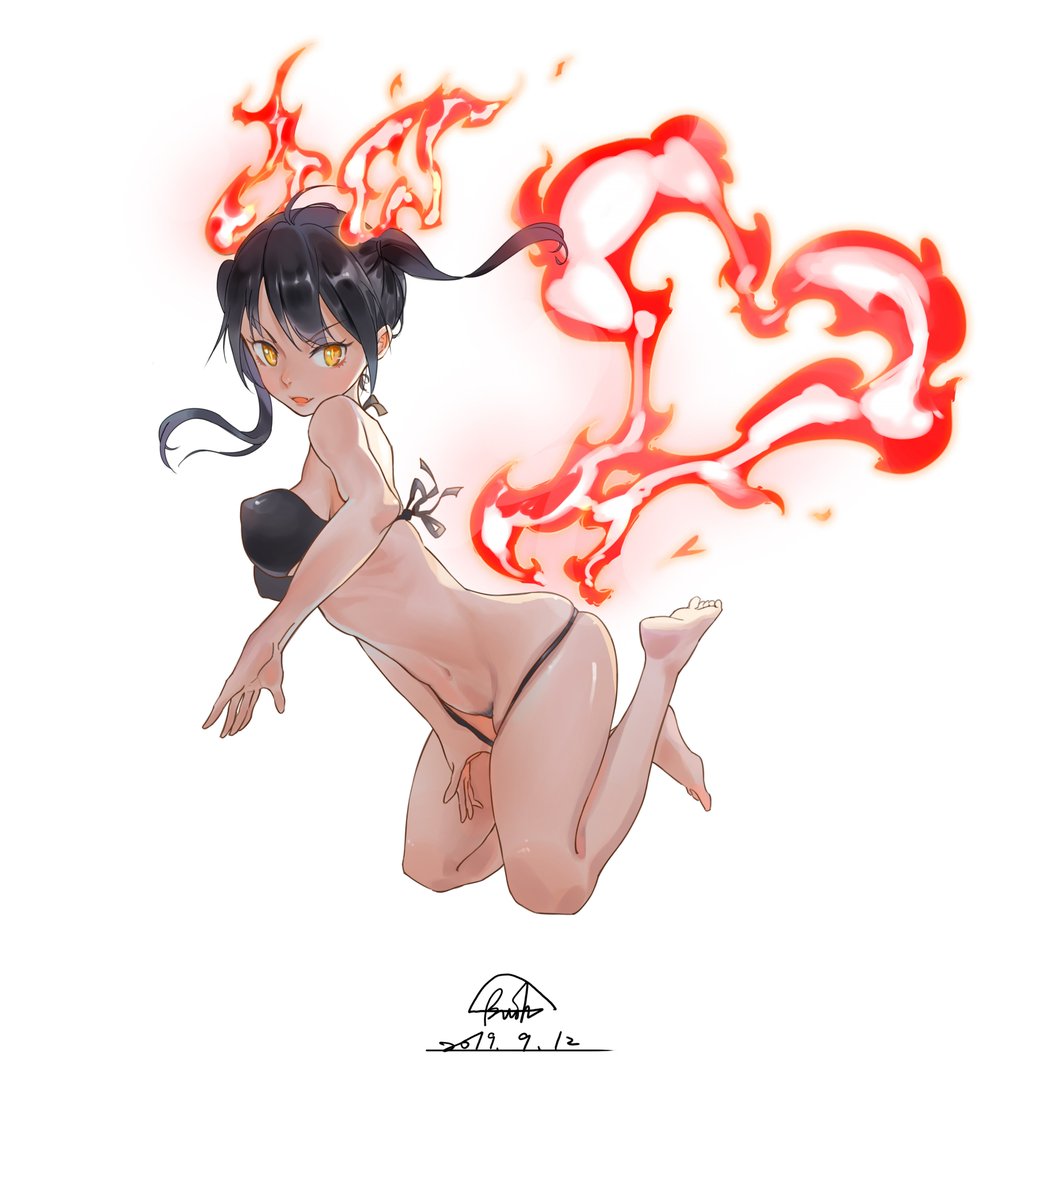 完成不小心畫得有點久..
#炎炎ノ消防隊 #環古達 #女の子 #泳裝 #水着 #anime 